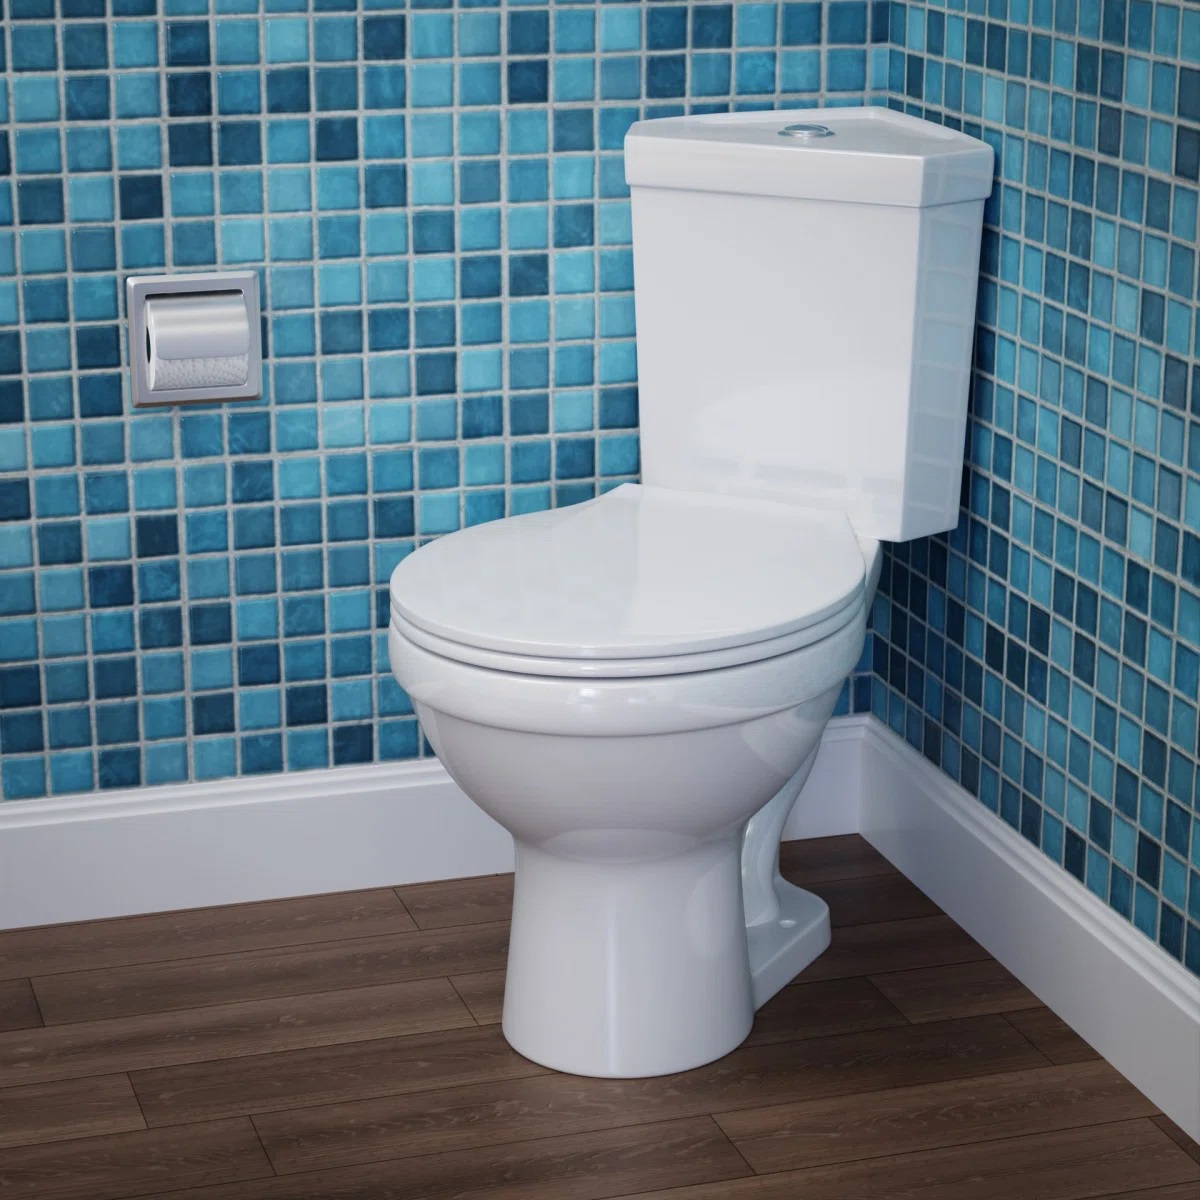 What Is Watersense Toilet